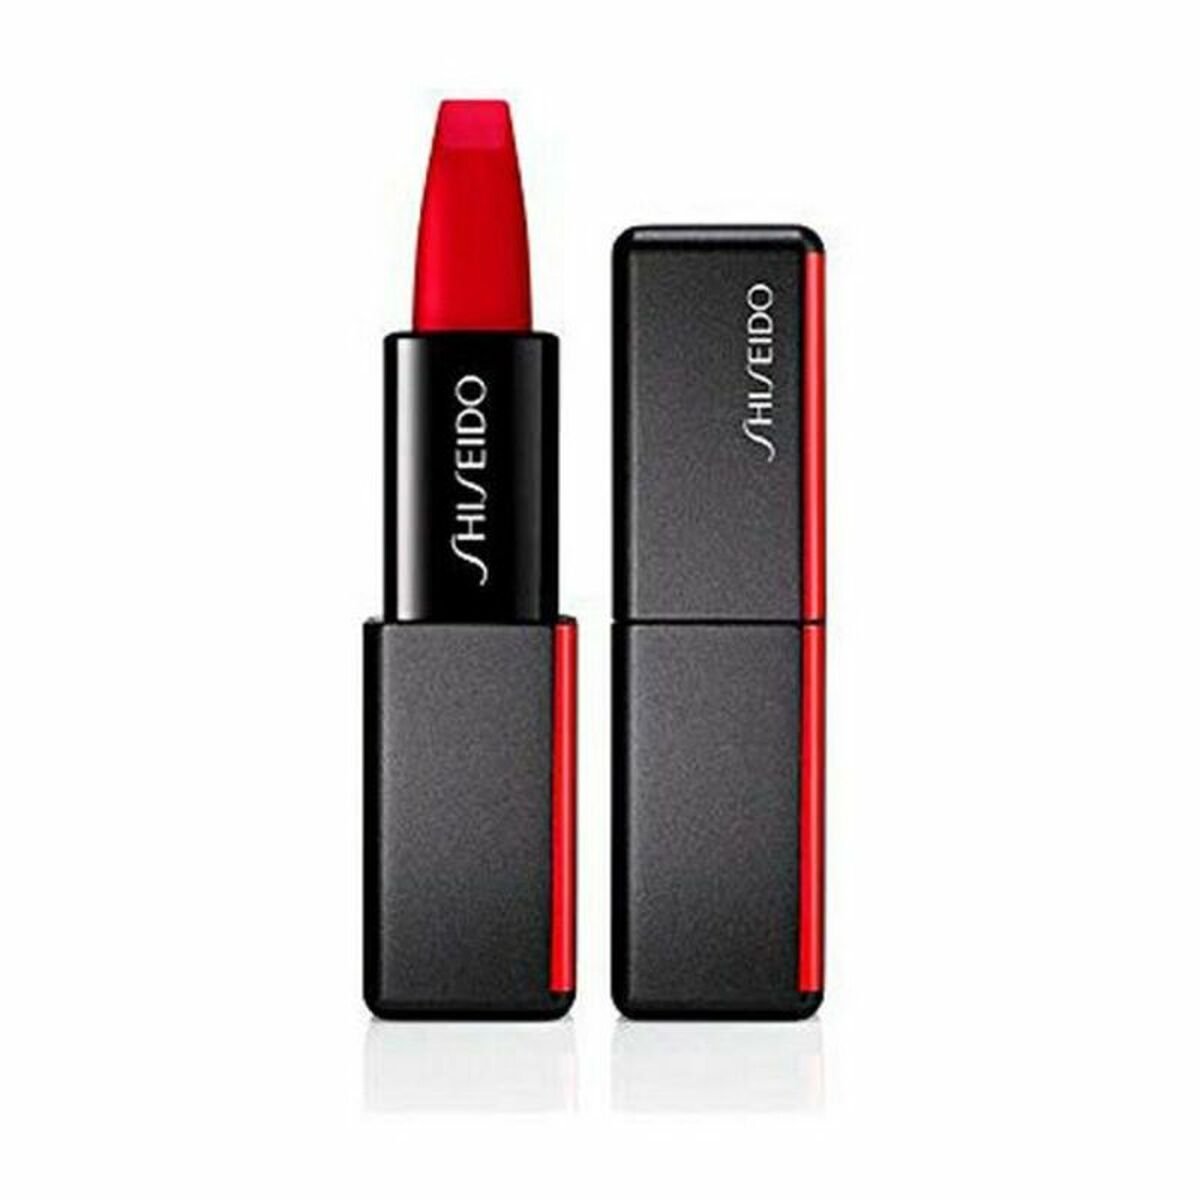 Lipstick Modernmatte Powder Shiseido 4 g - JOSEPH BEAUTY